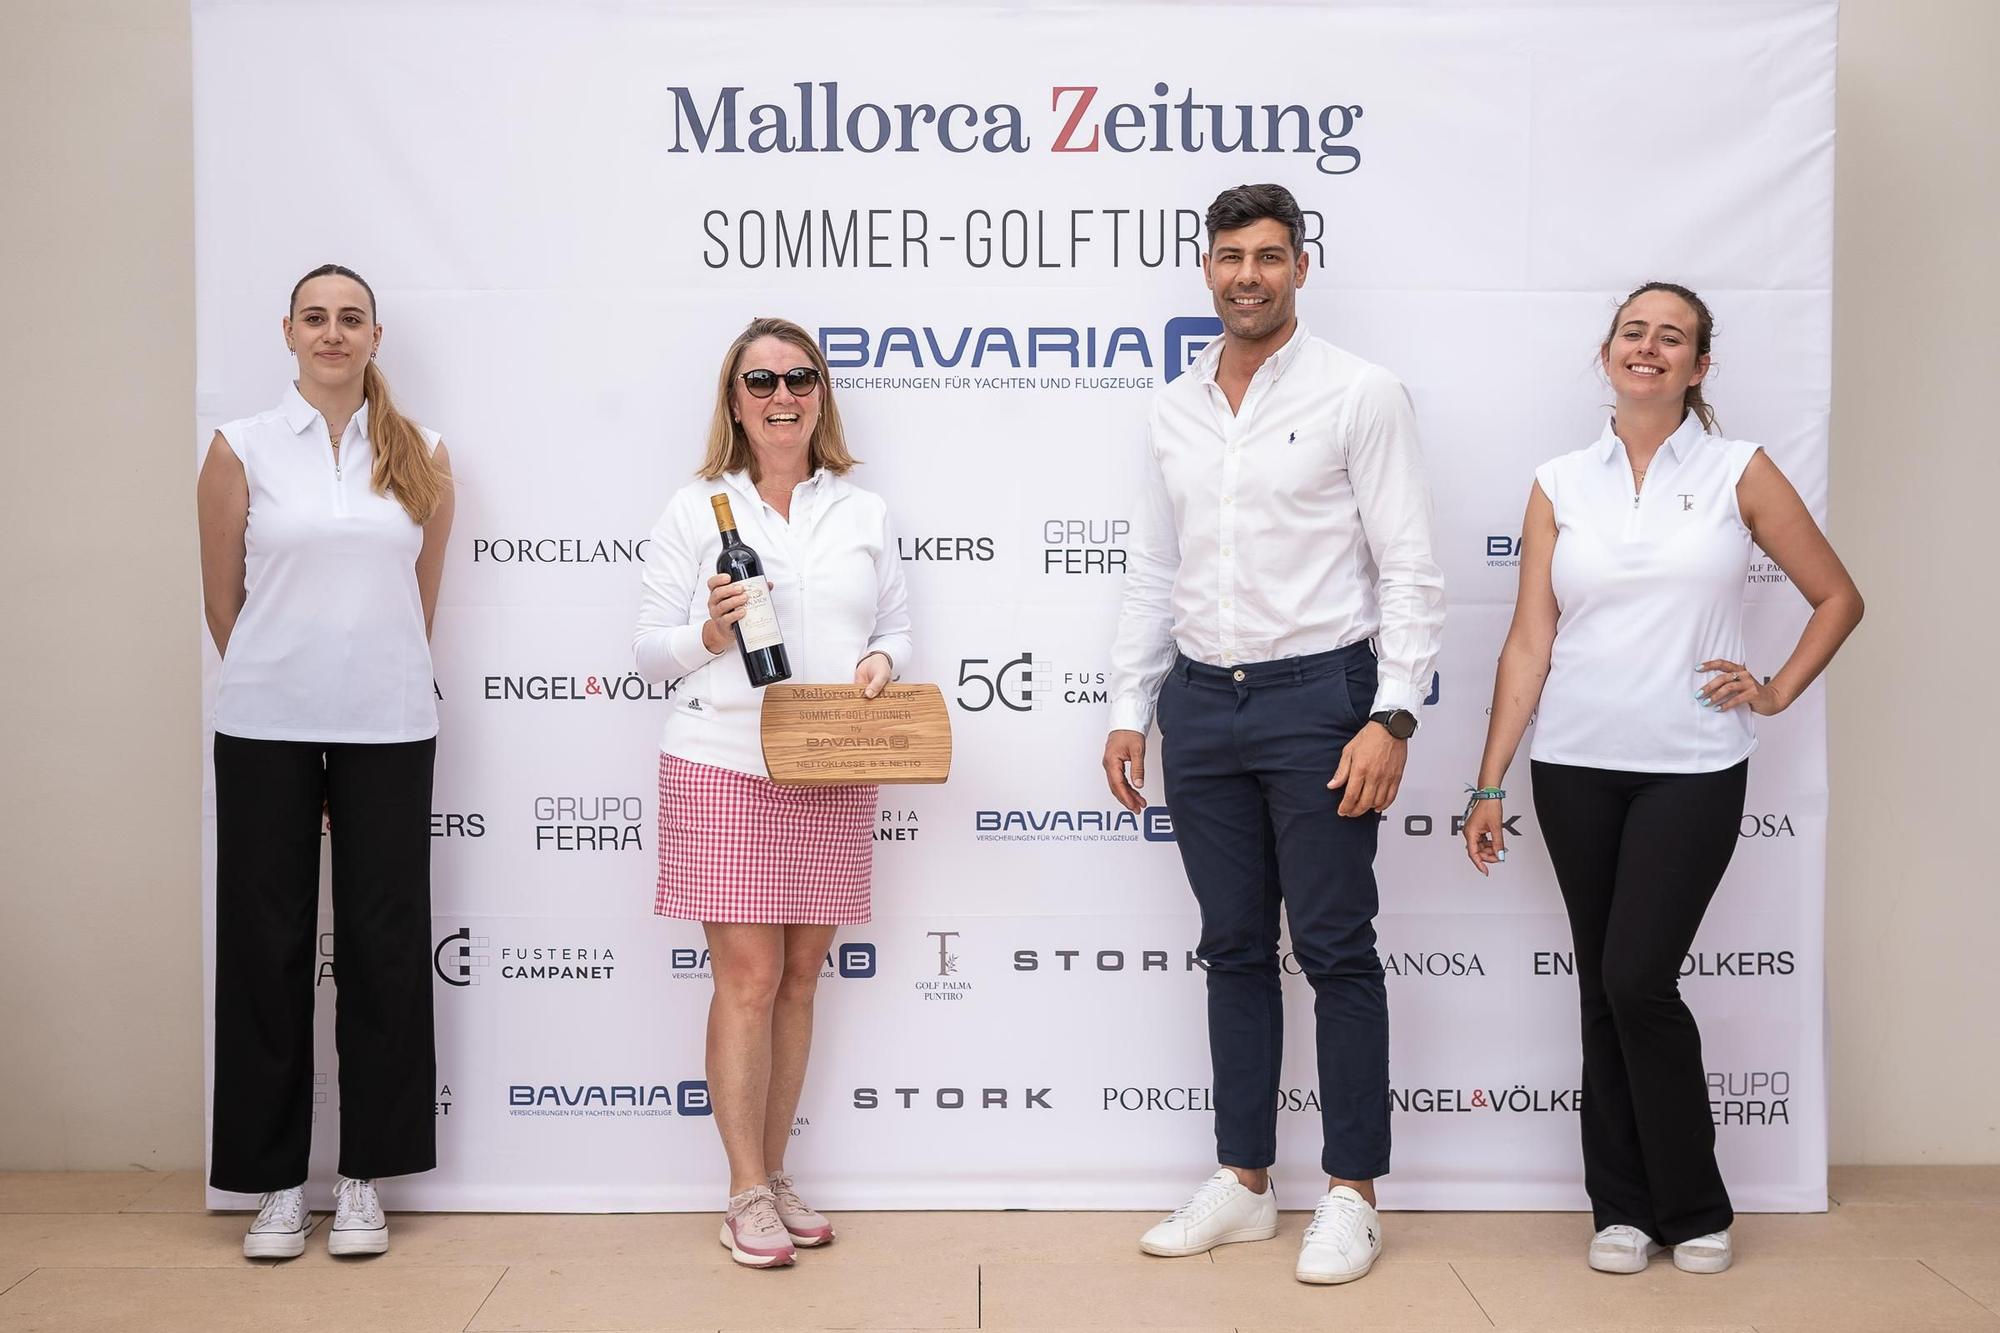 Premiere für das I. Sommer-Golfturnier by Bavaria der Mallorca Zeitung - Feier und Siegerehrung